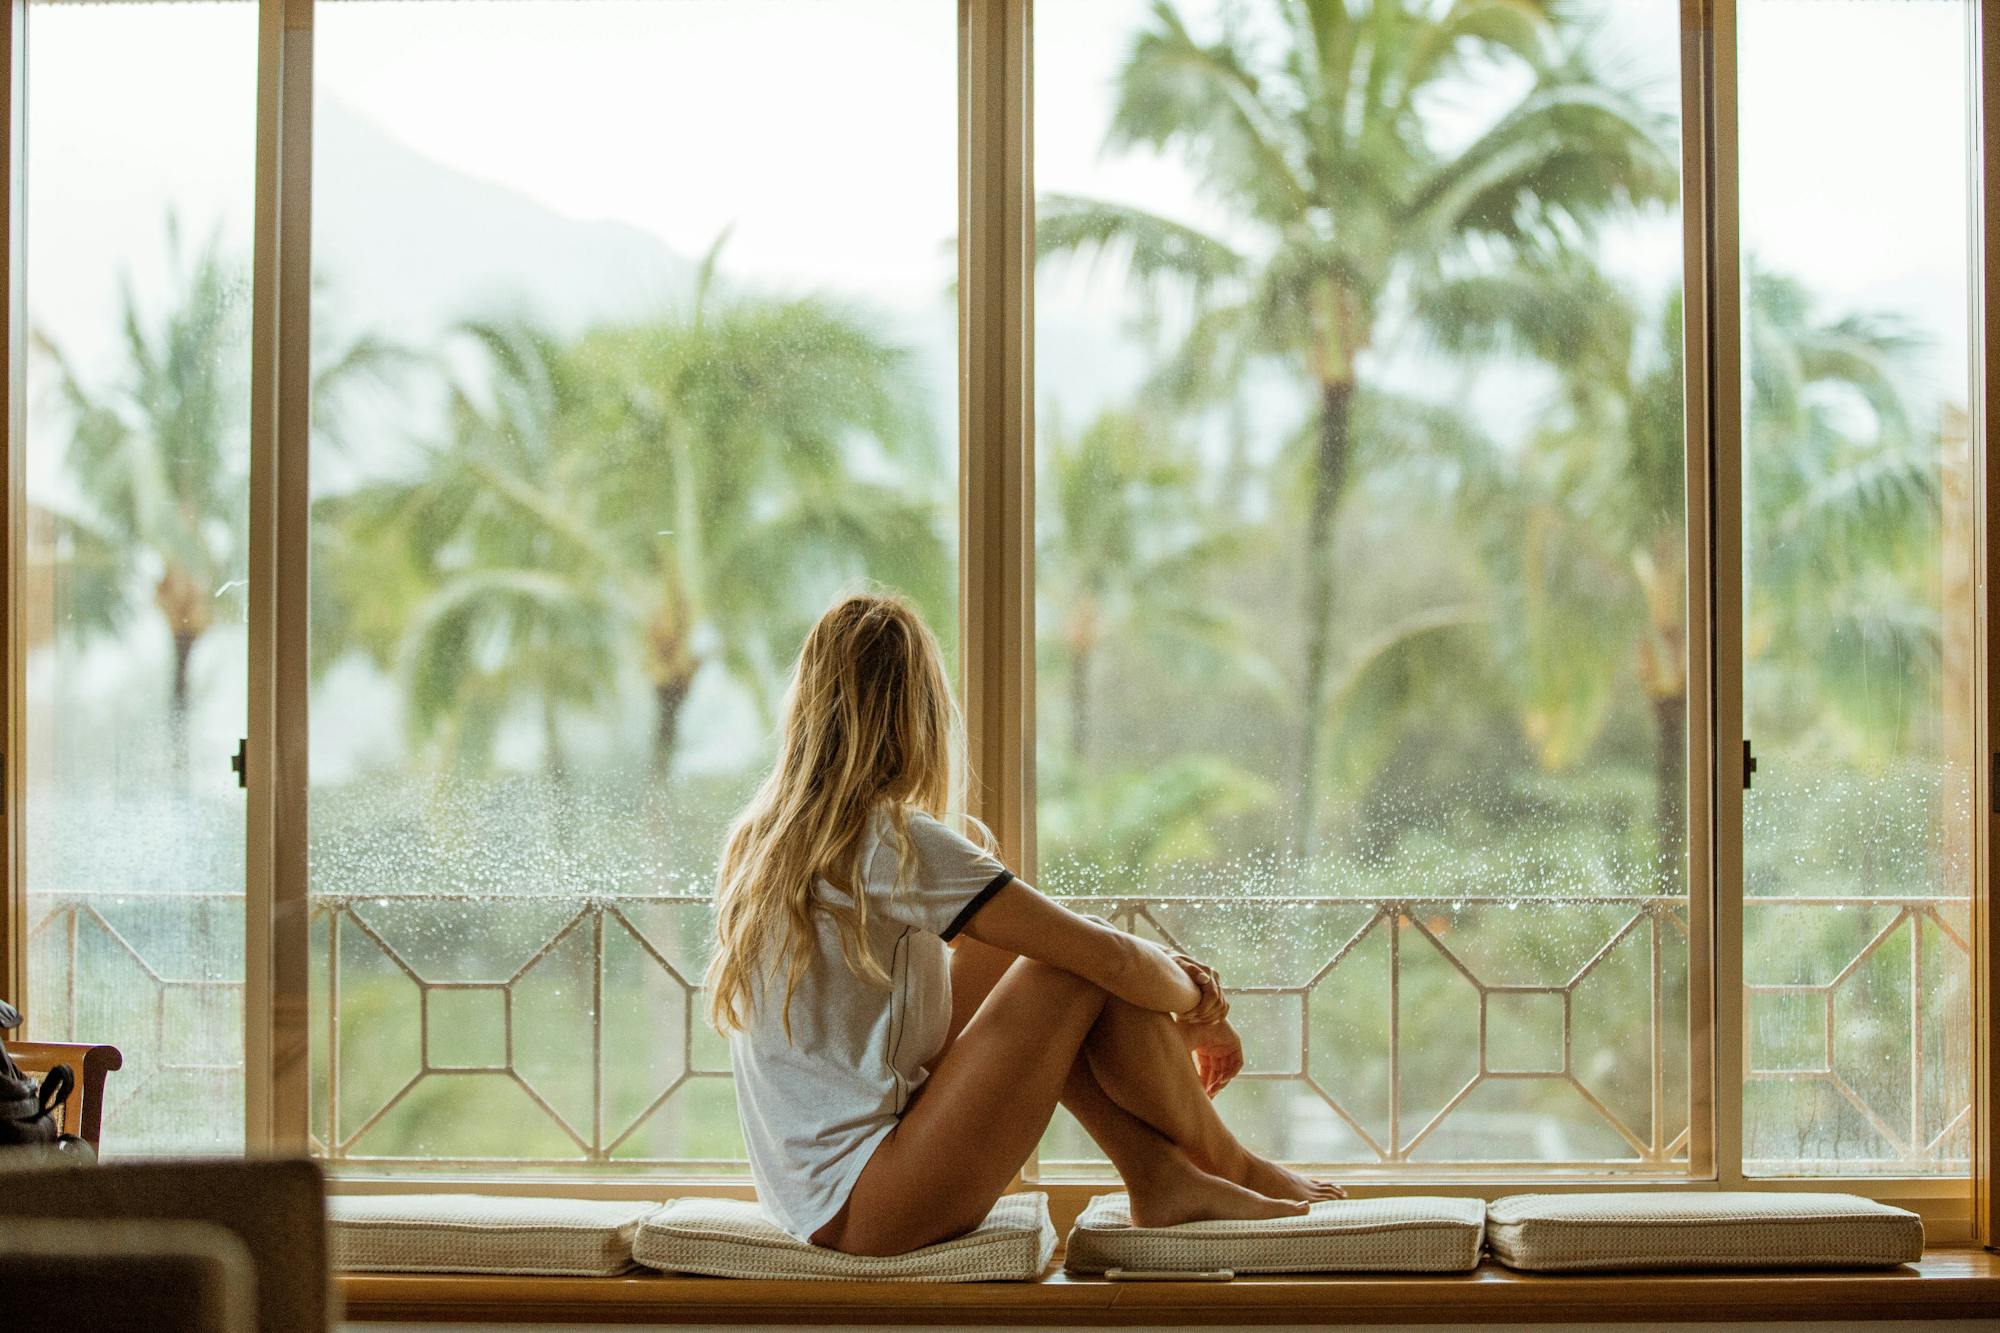 Młoda kobieta siedzi na parapecie i patrzy na zewnątrz na krajobraz palmowy. Obraz wywołuje letnie, tropikalne uczucia.